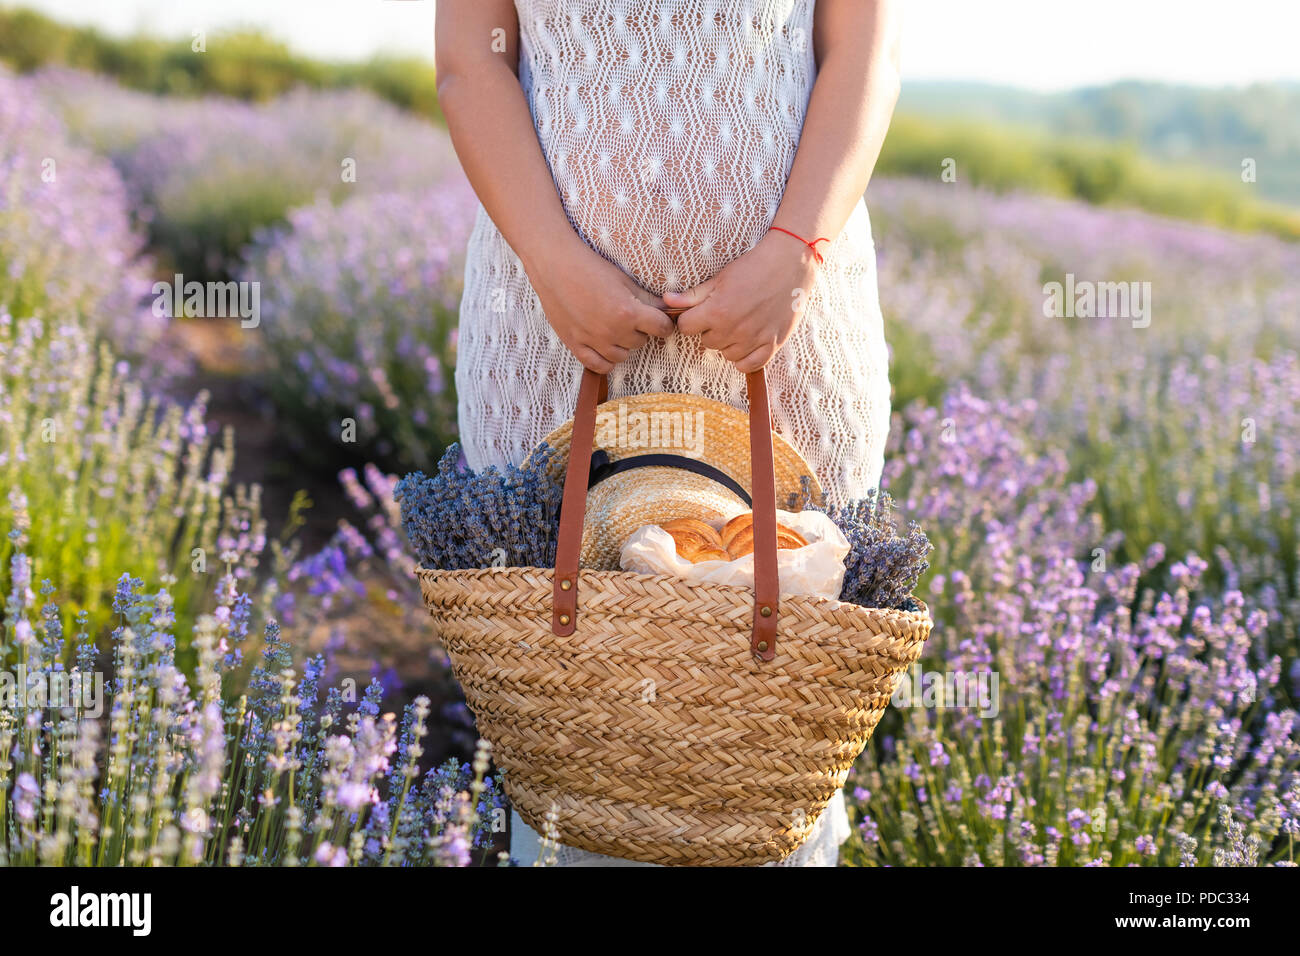 Imagen recortada de la mujer embarazada en vestido blanco celebración cesta de picnic en el campo de lavanda violeta Foto de stock